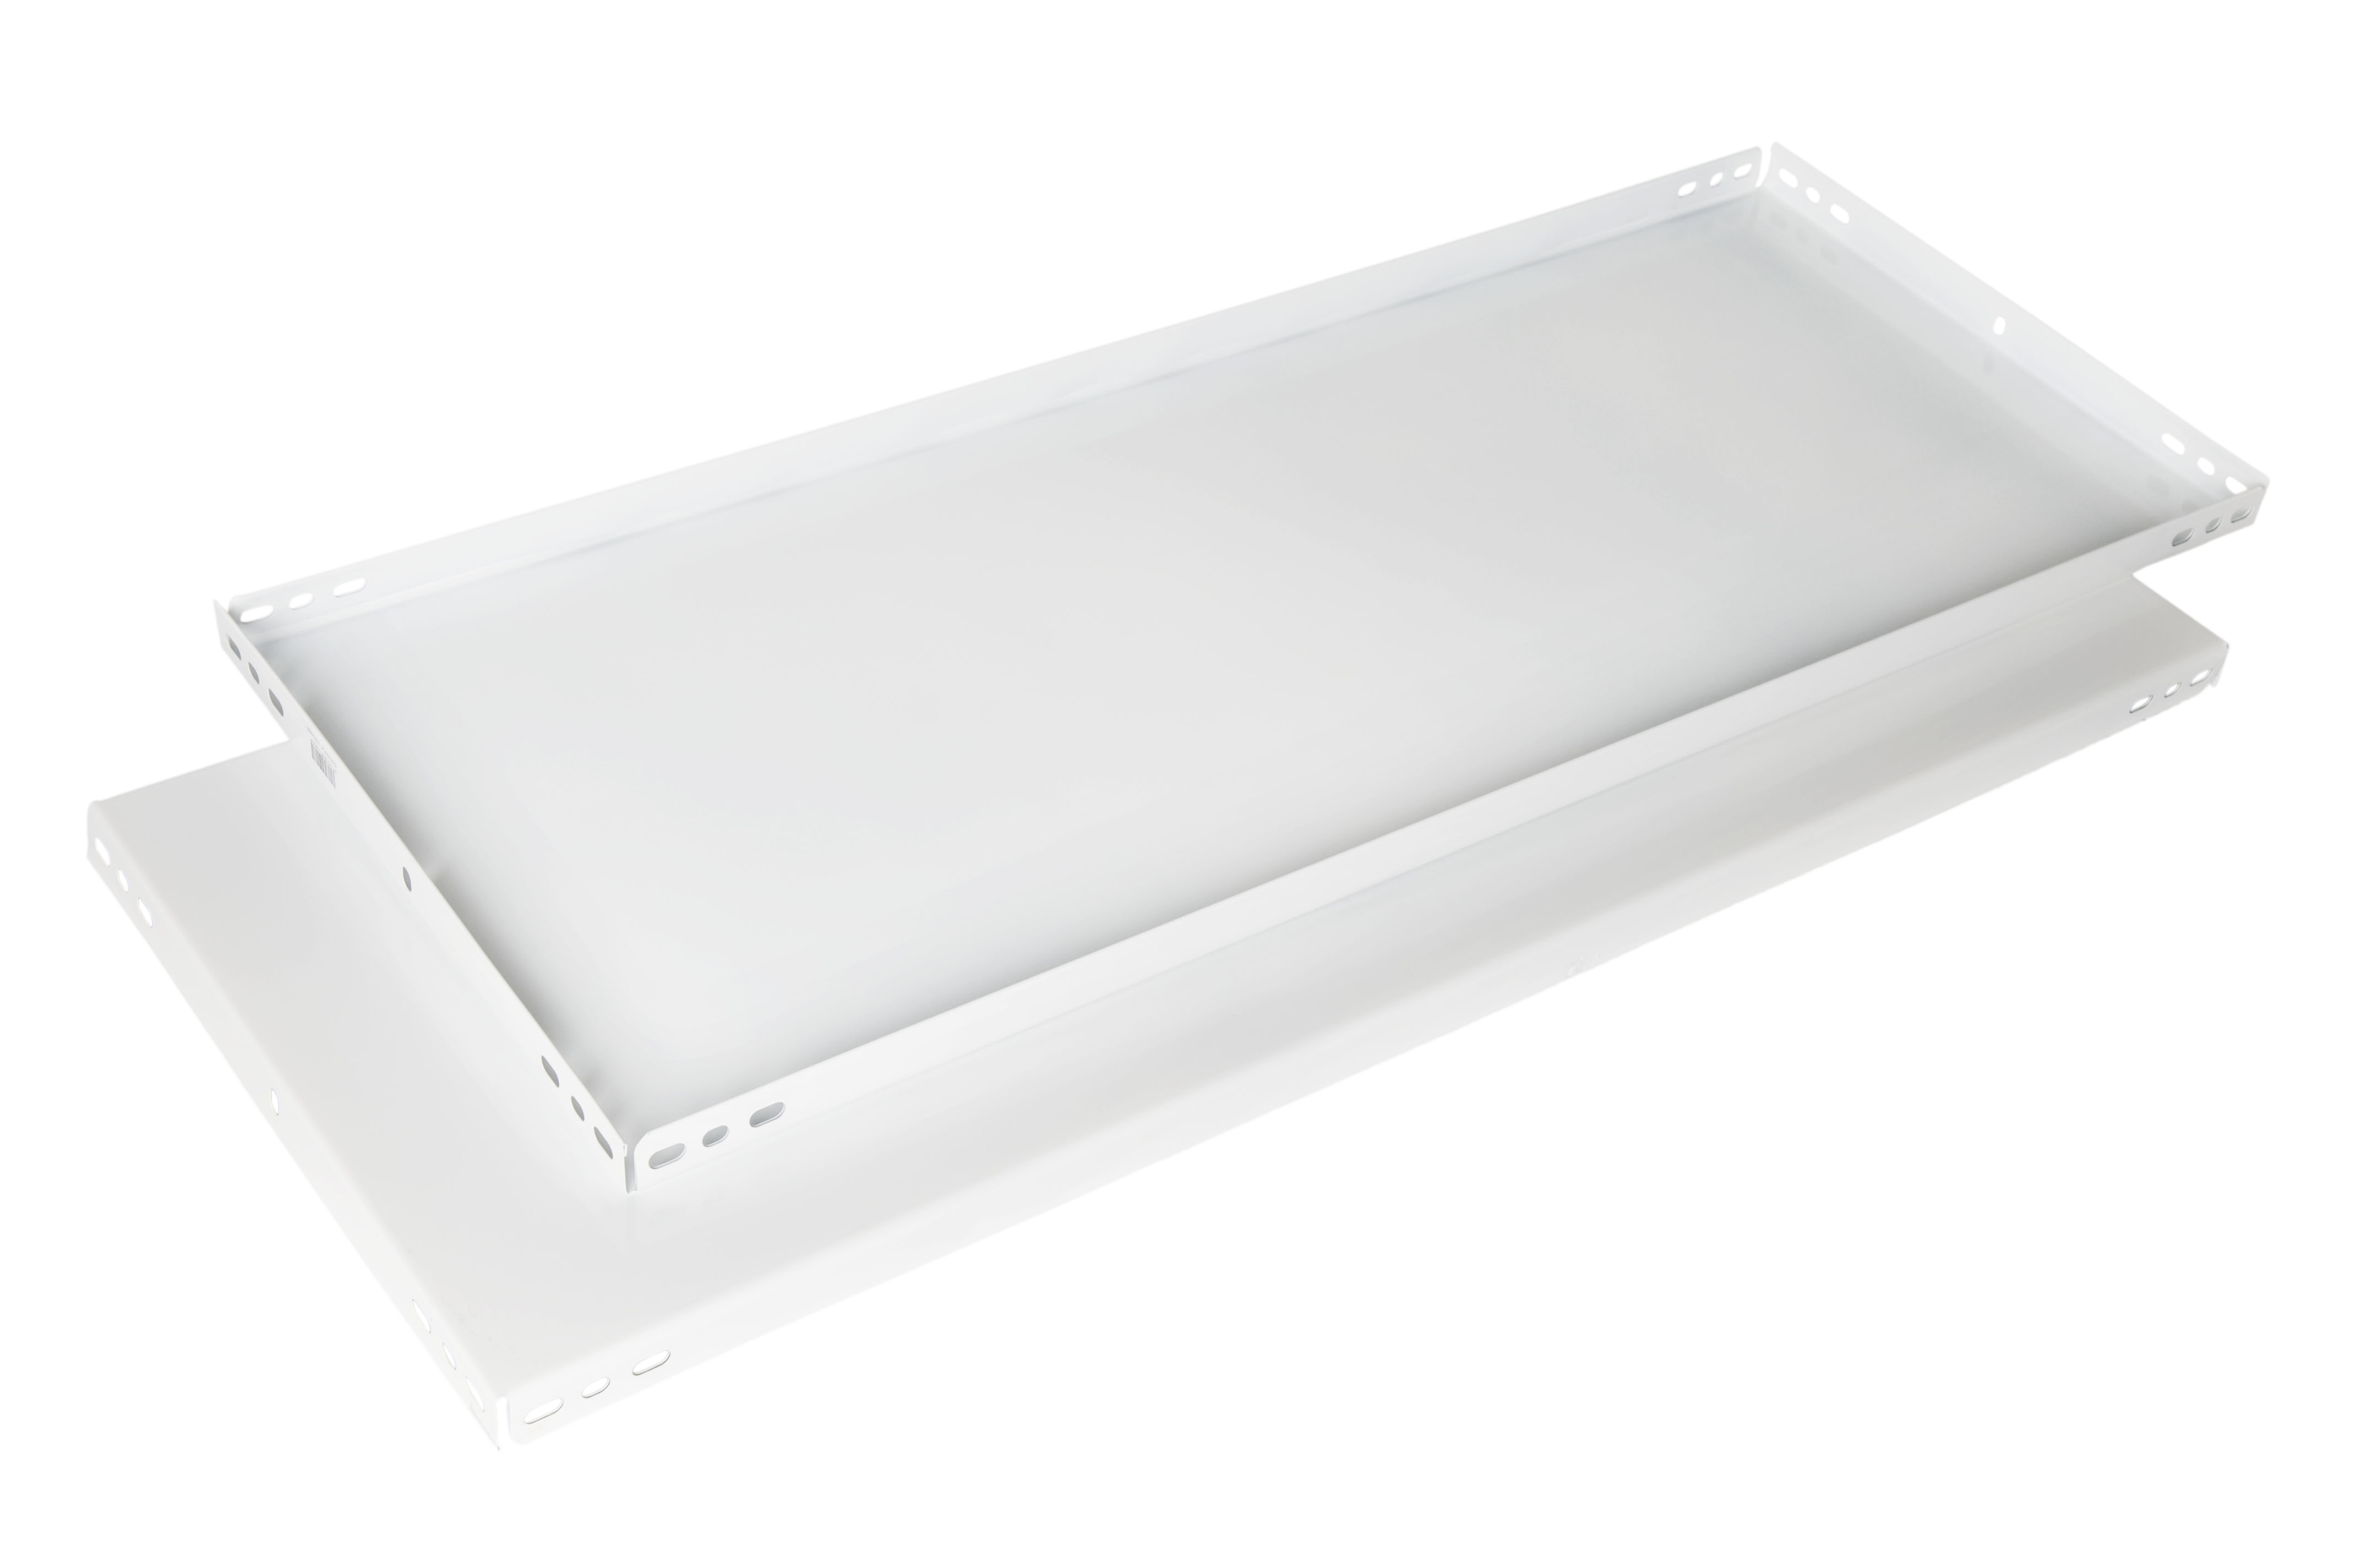 Balda recta para sistema de estantes de acero blanco de 100x50cm